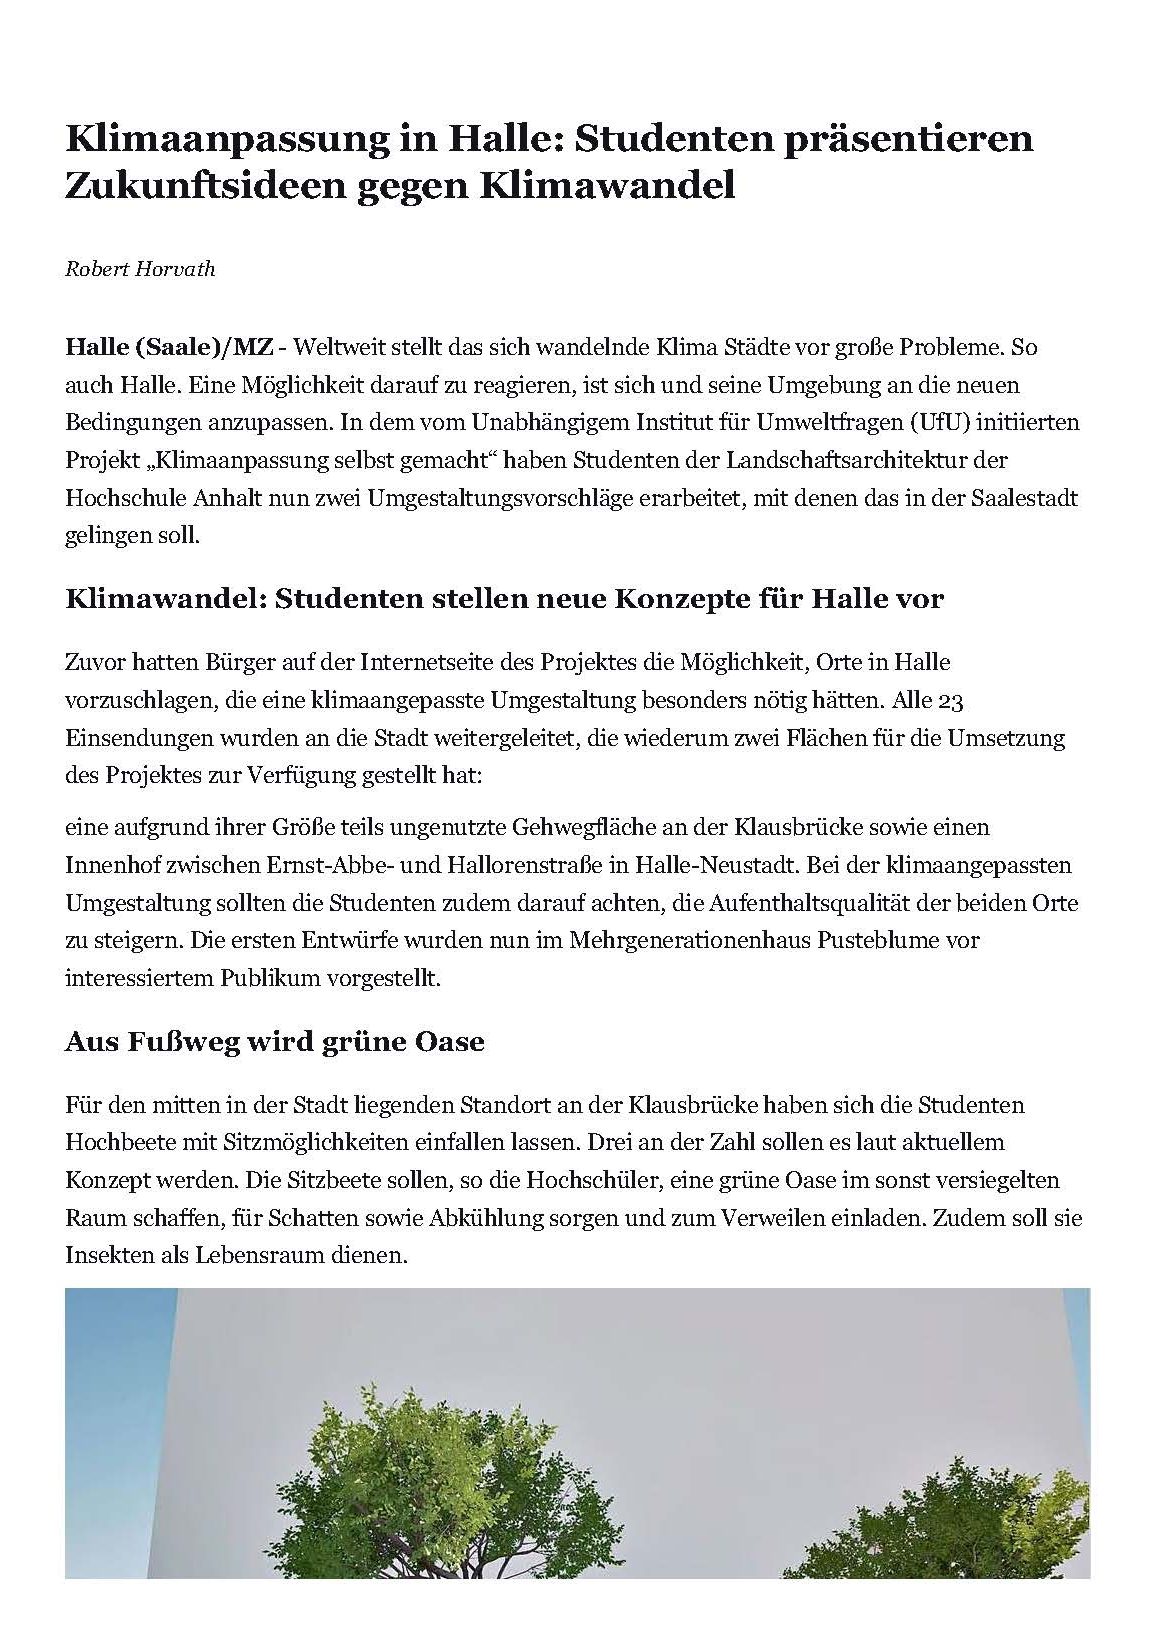 Das Bild zeigt einen Screenshot des Artikel aus der Mitteldeutschen Zeitung